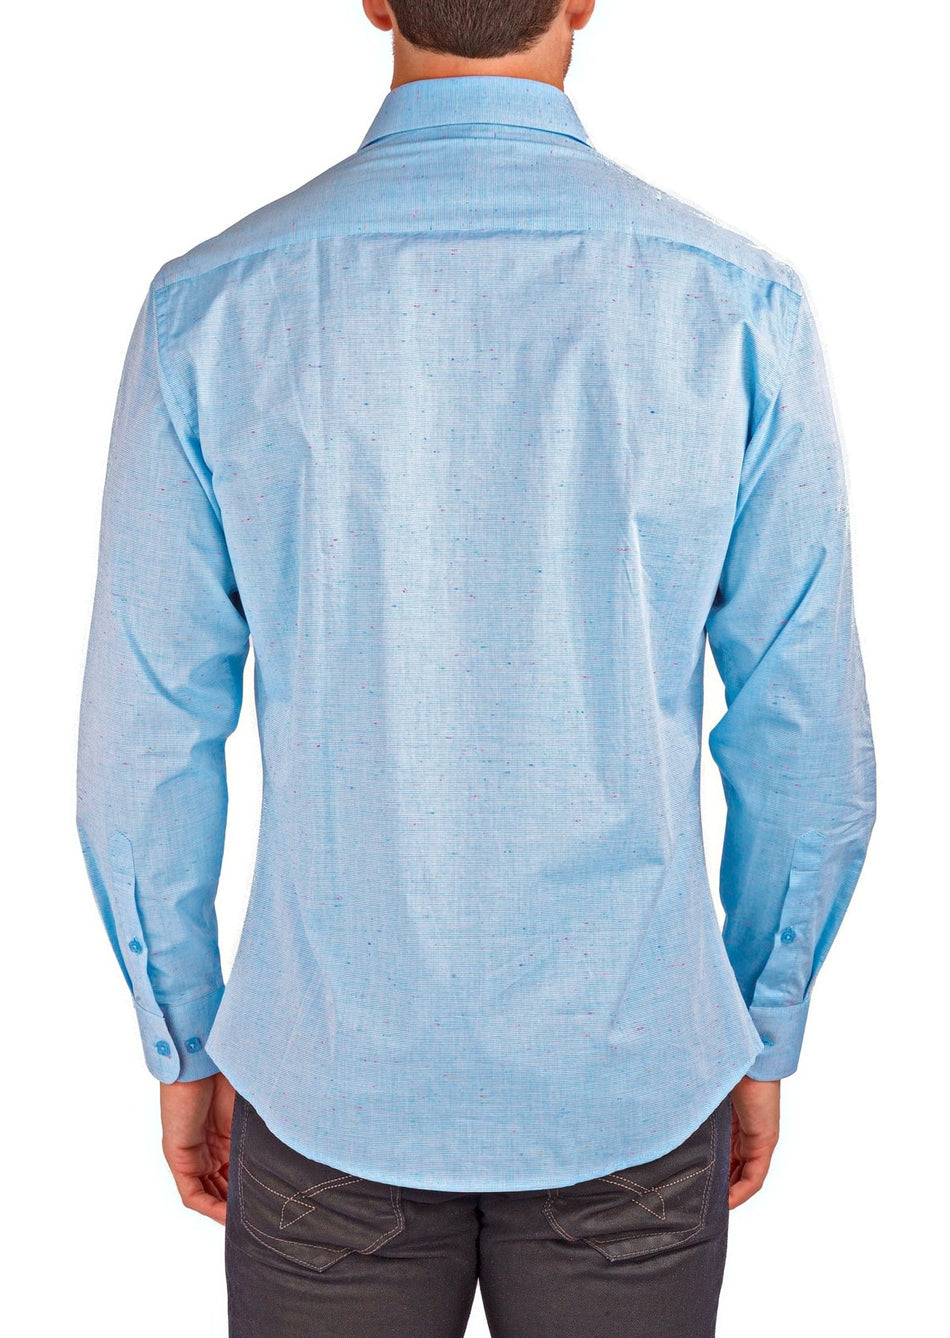 Men's Speckled Linen Texture Long Sleeve Dress Shirt Light Blue